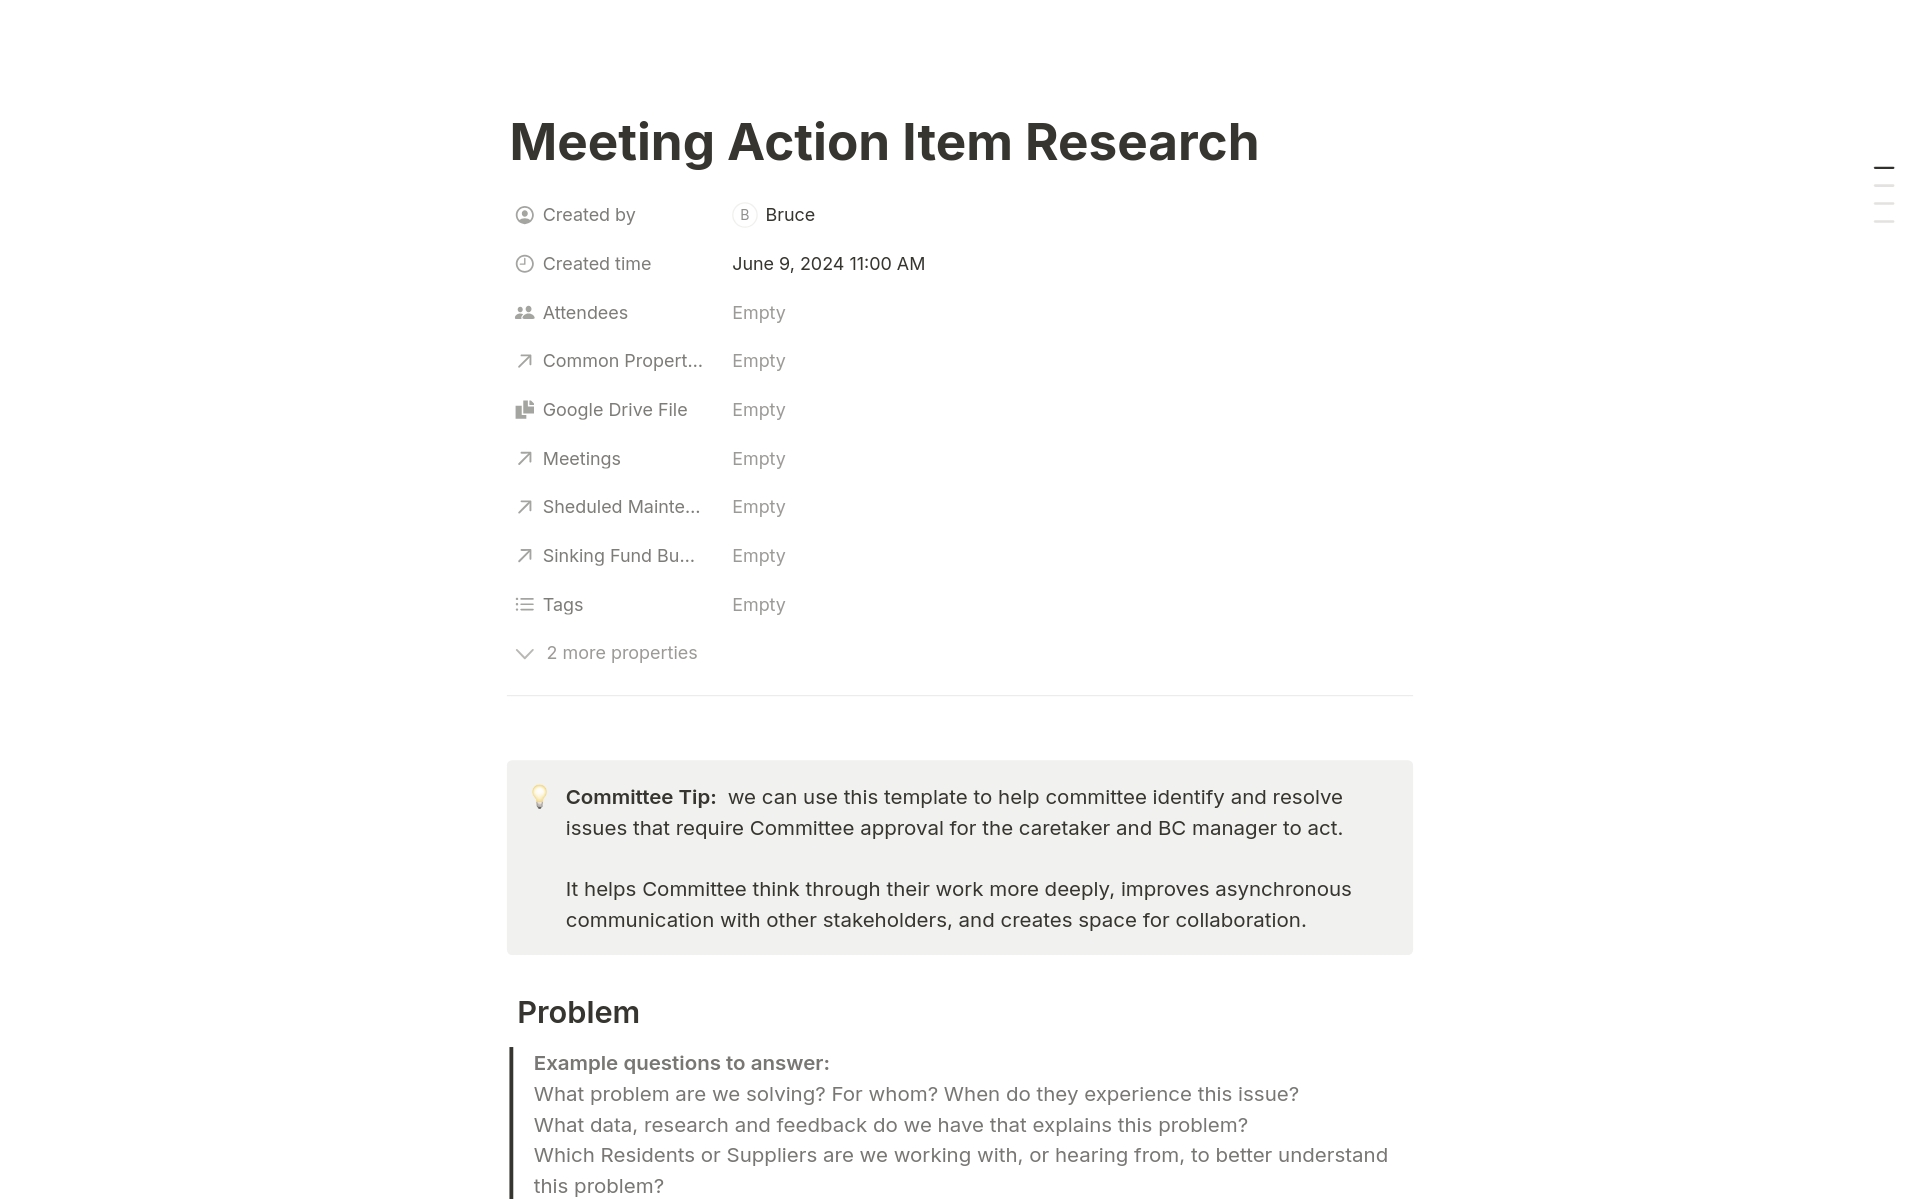 Uma prévia do modelo para Meeting Action Item Research